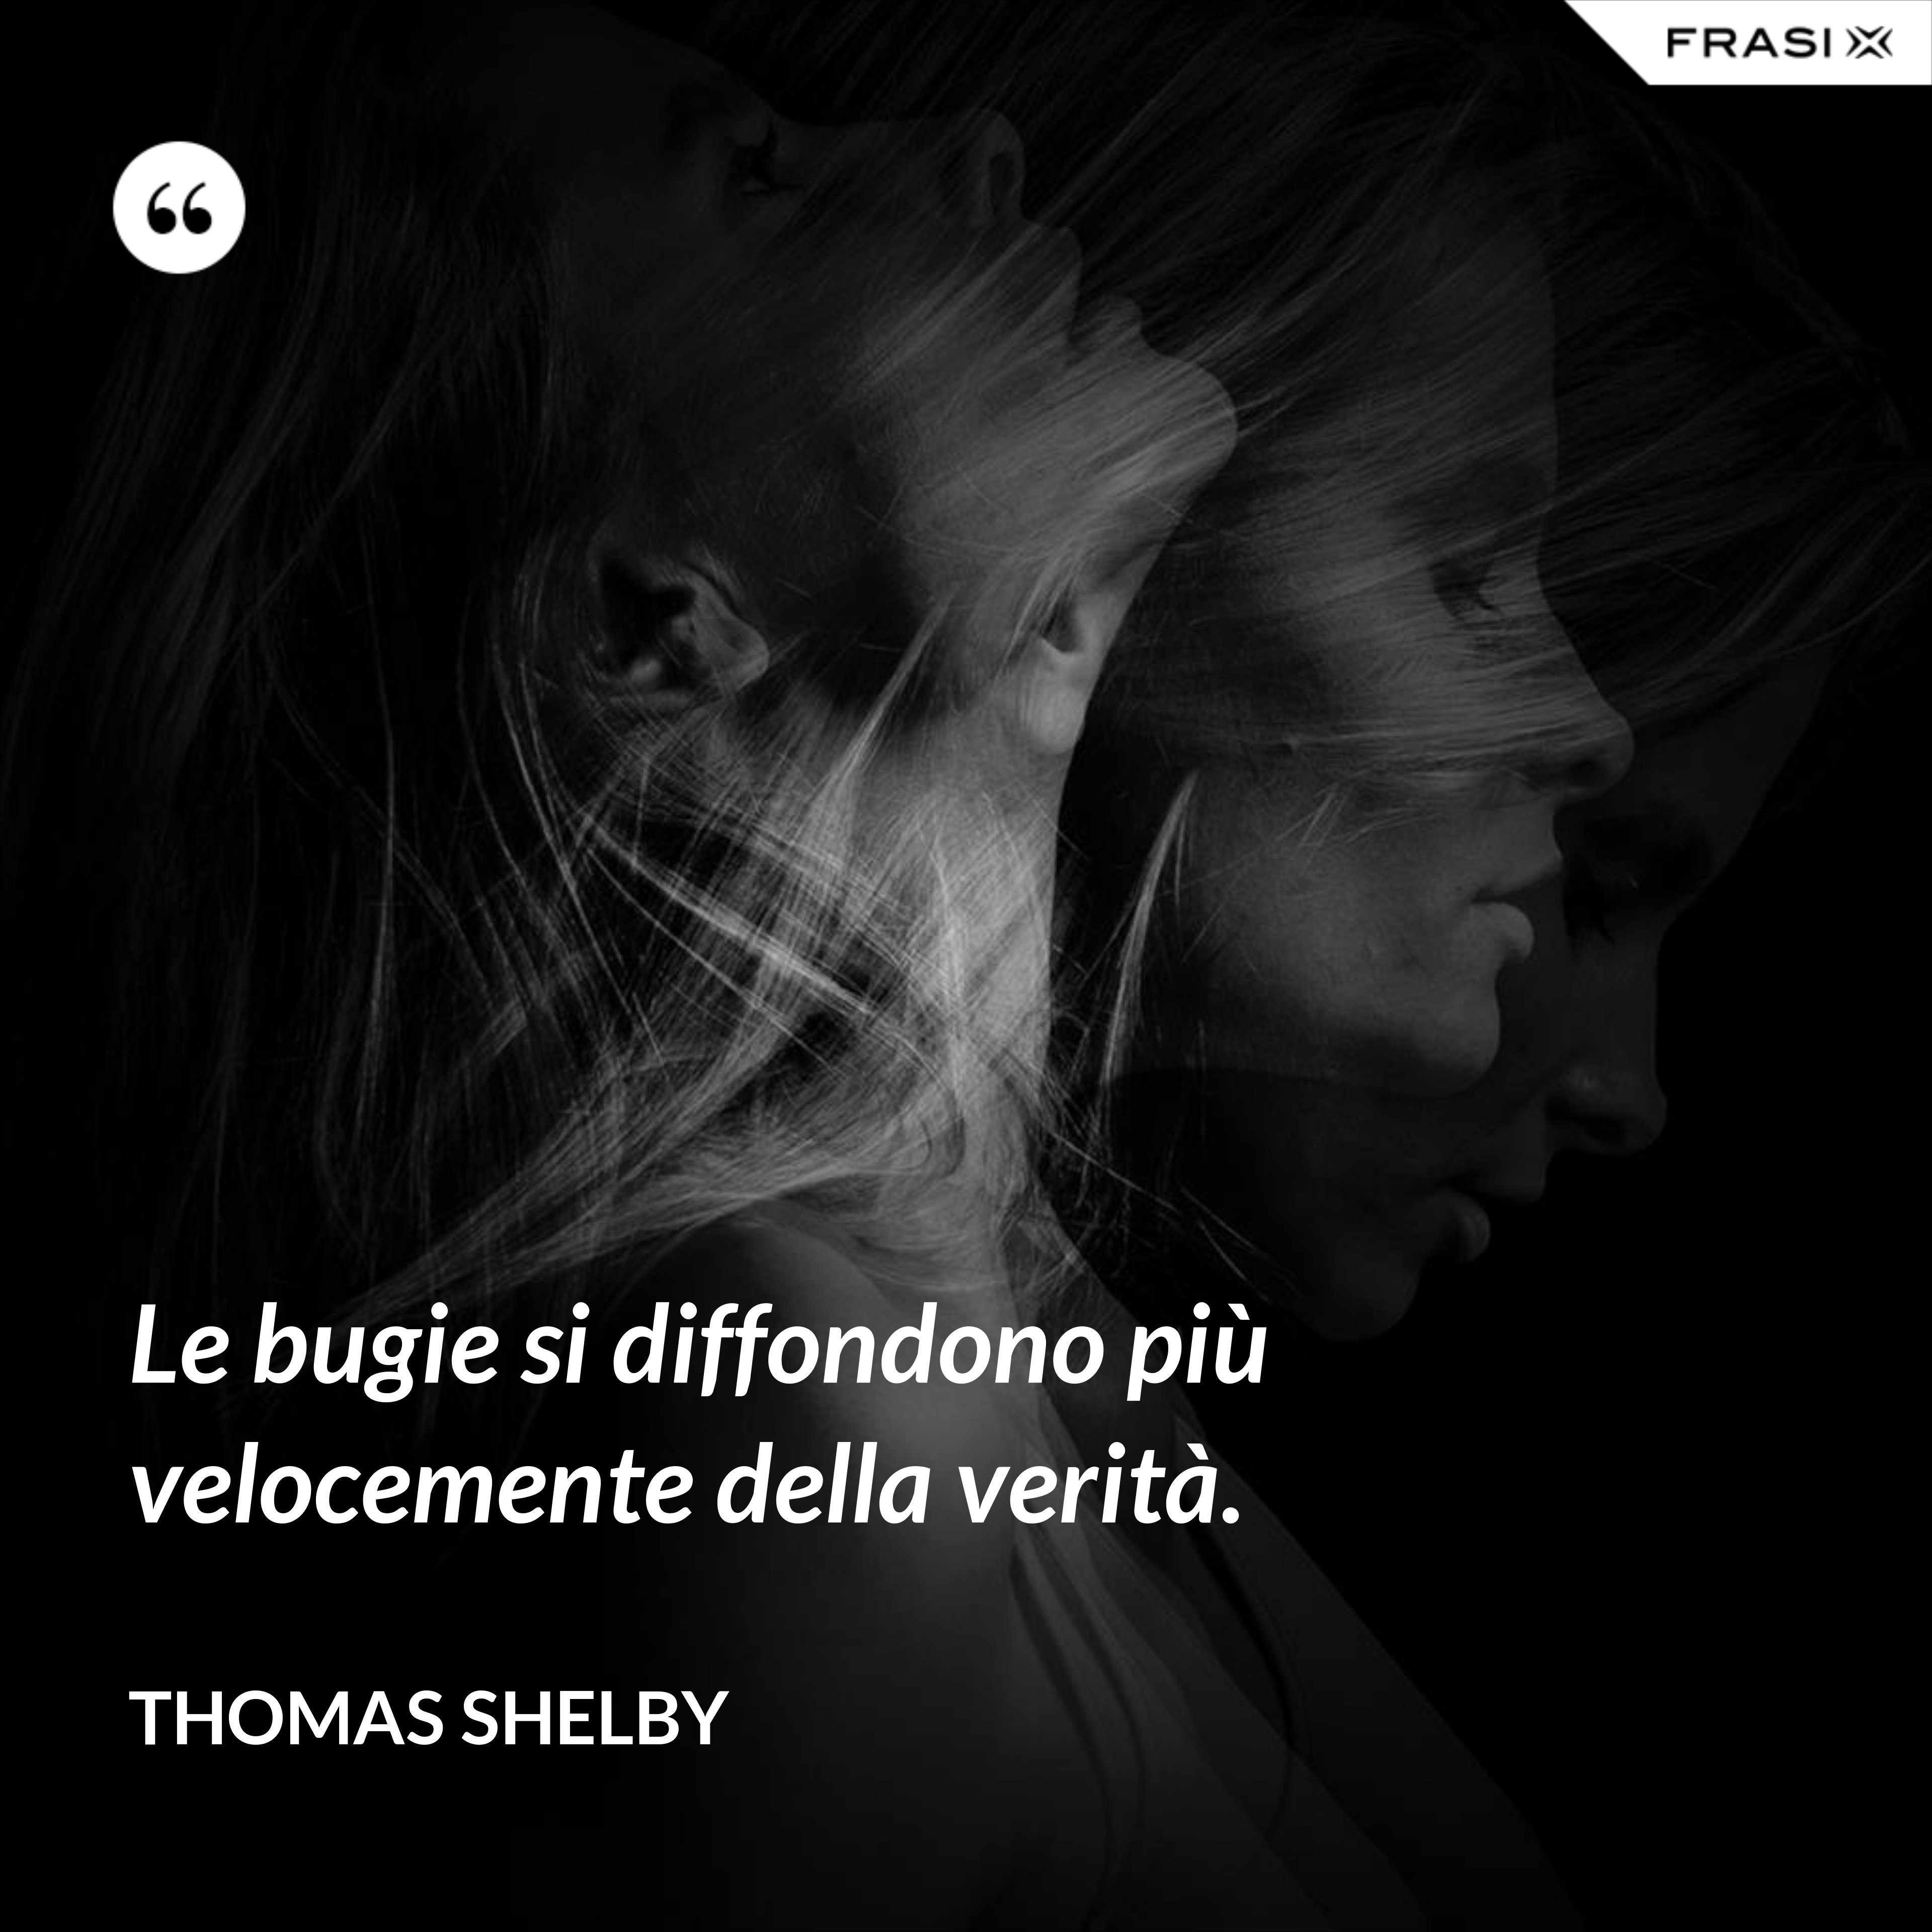 Le bugie si diffondono più velocemente della verità. - Thomas Shelby